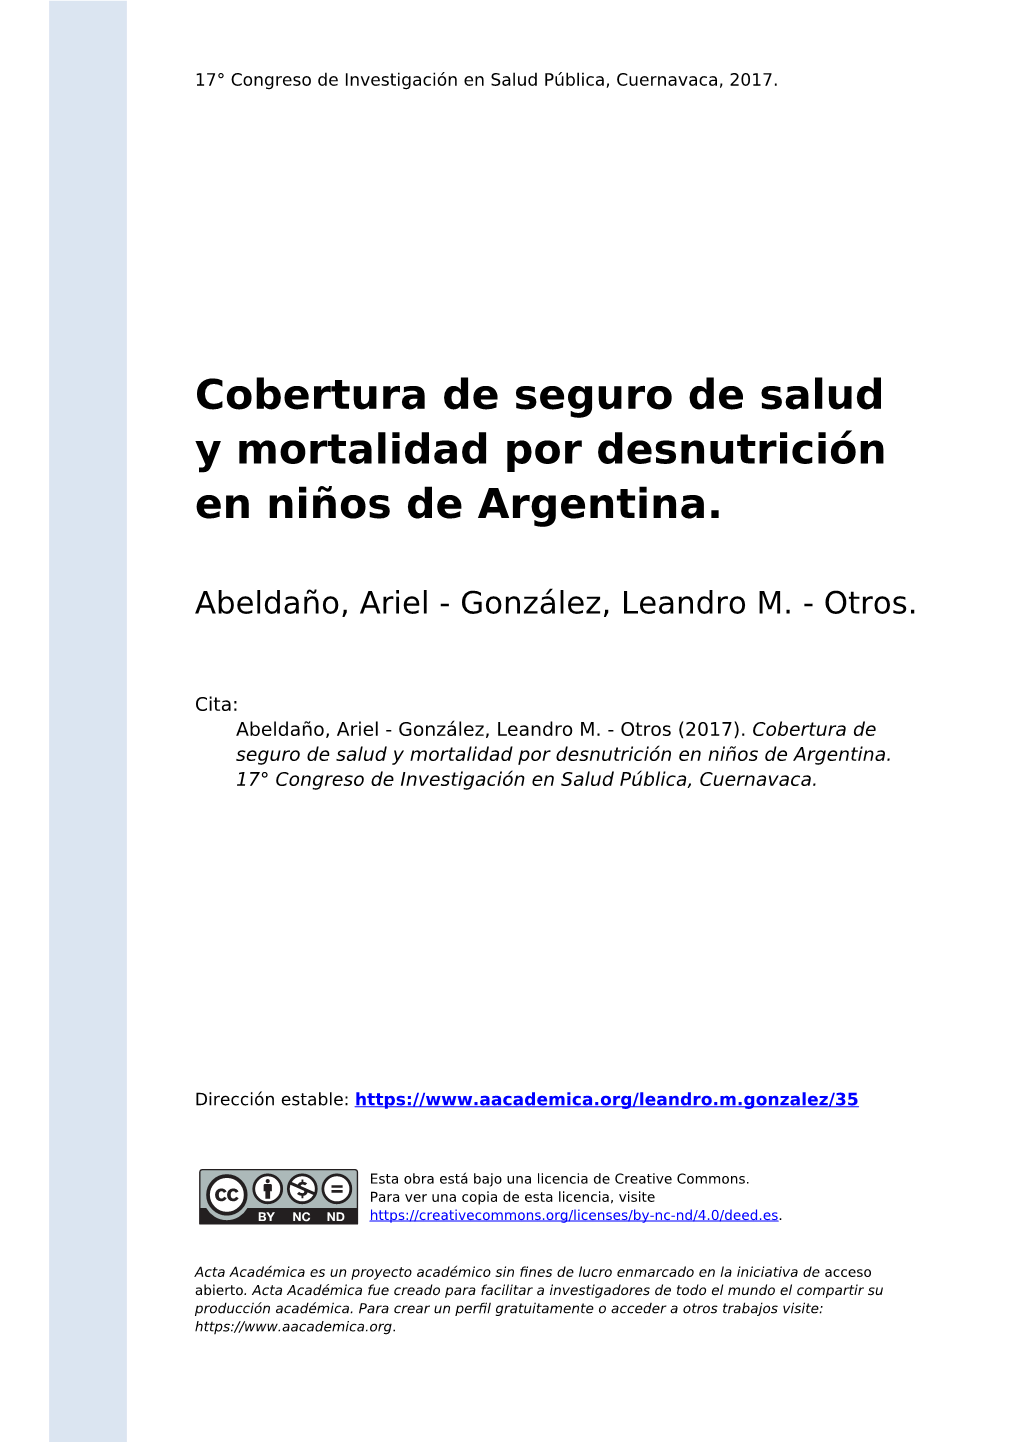 Cobertura De Seguro De Salud Y Mortalidad Por Desnutrición En Niños De Argentina